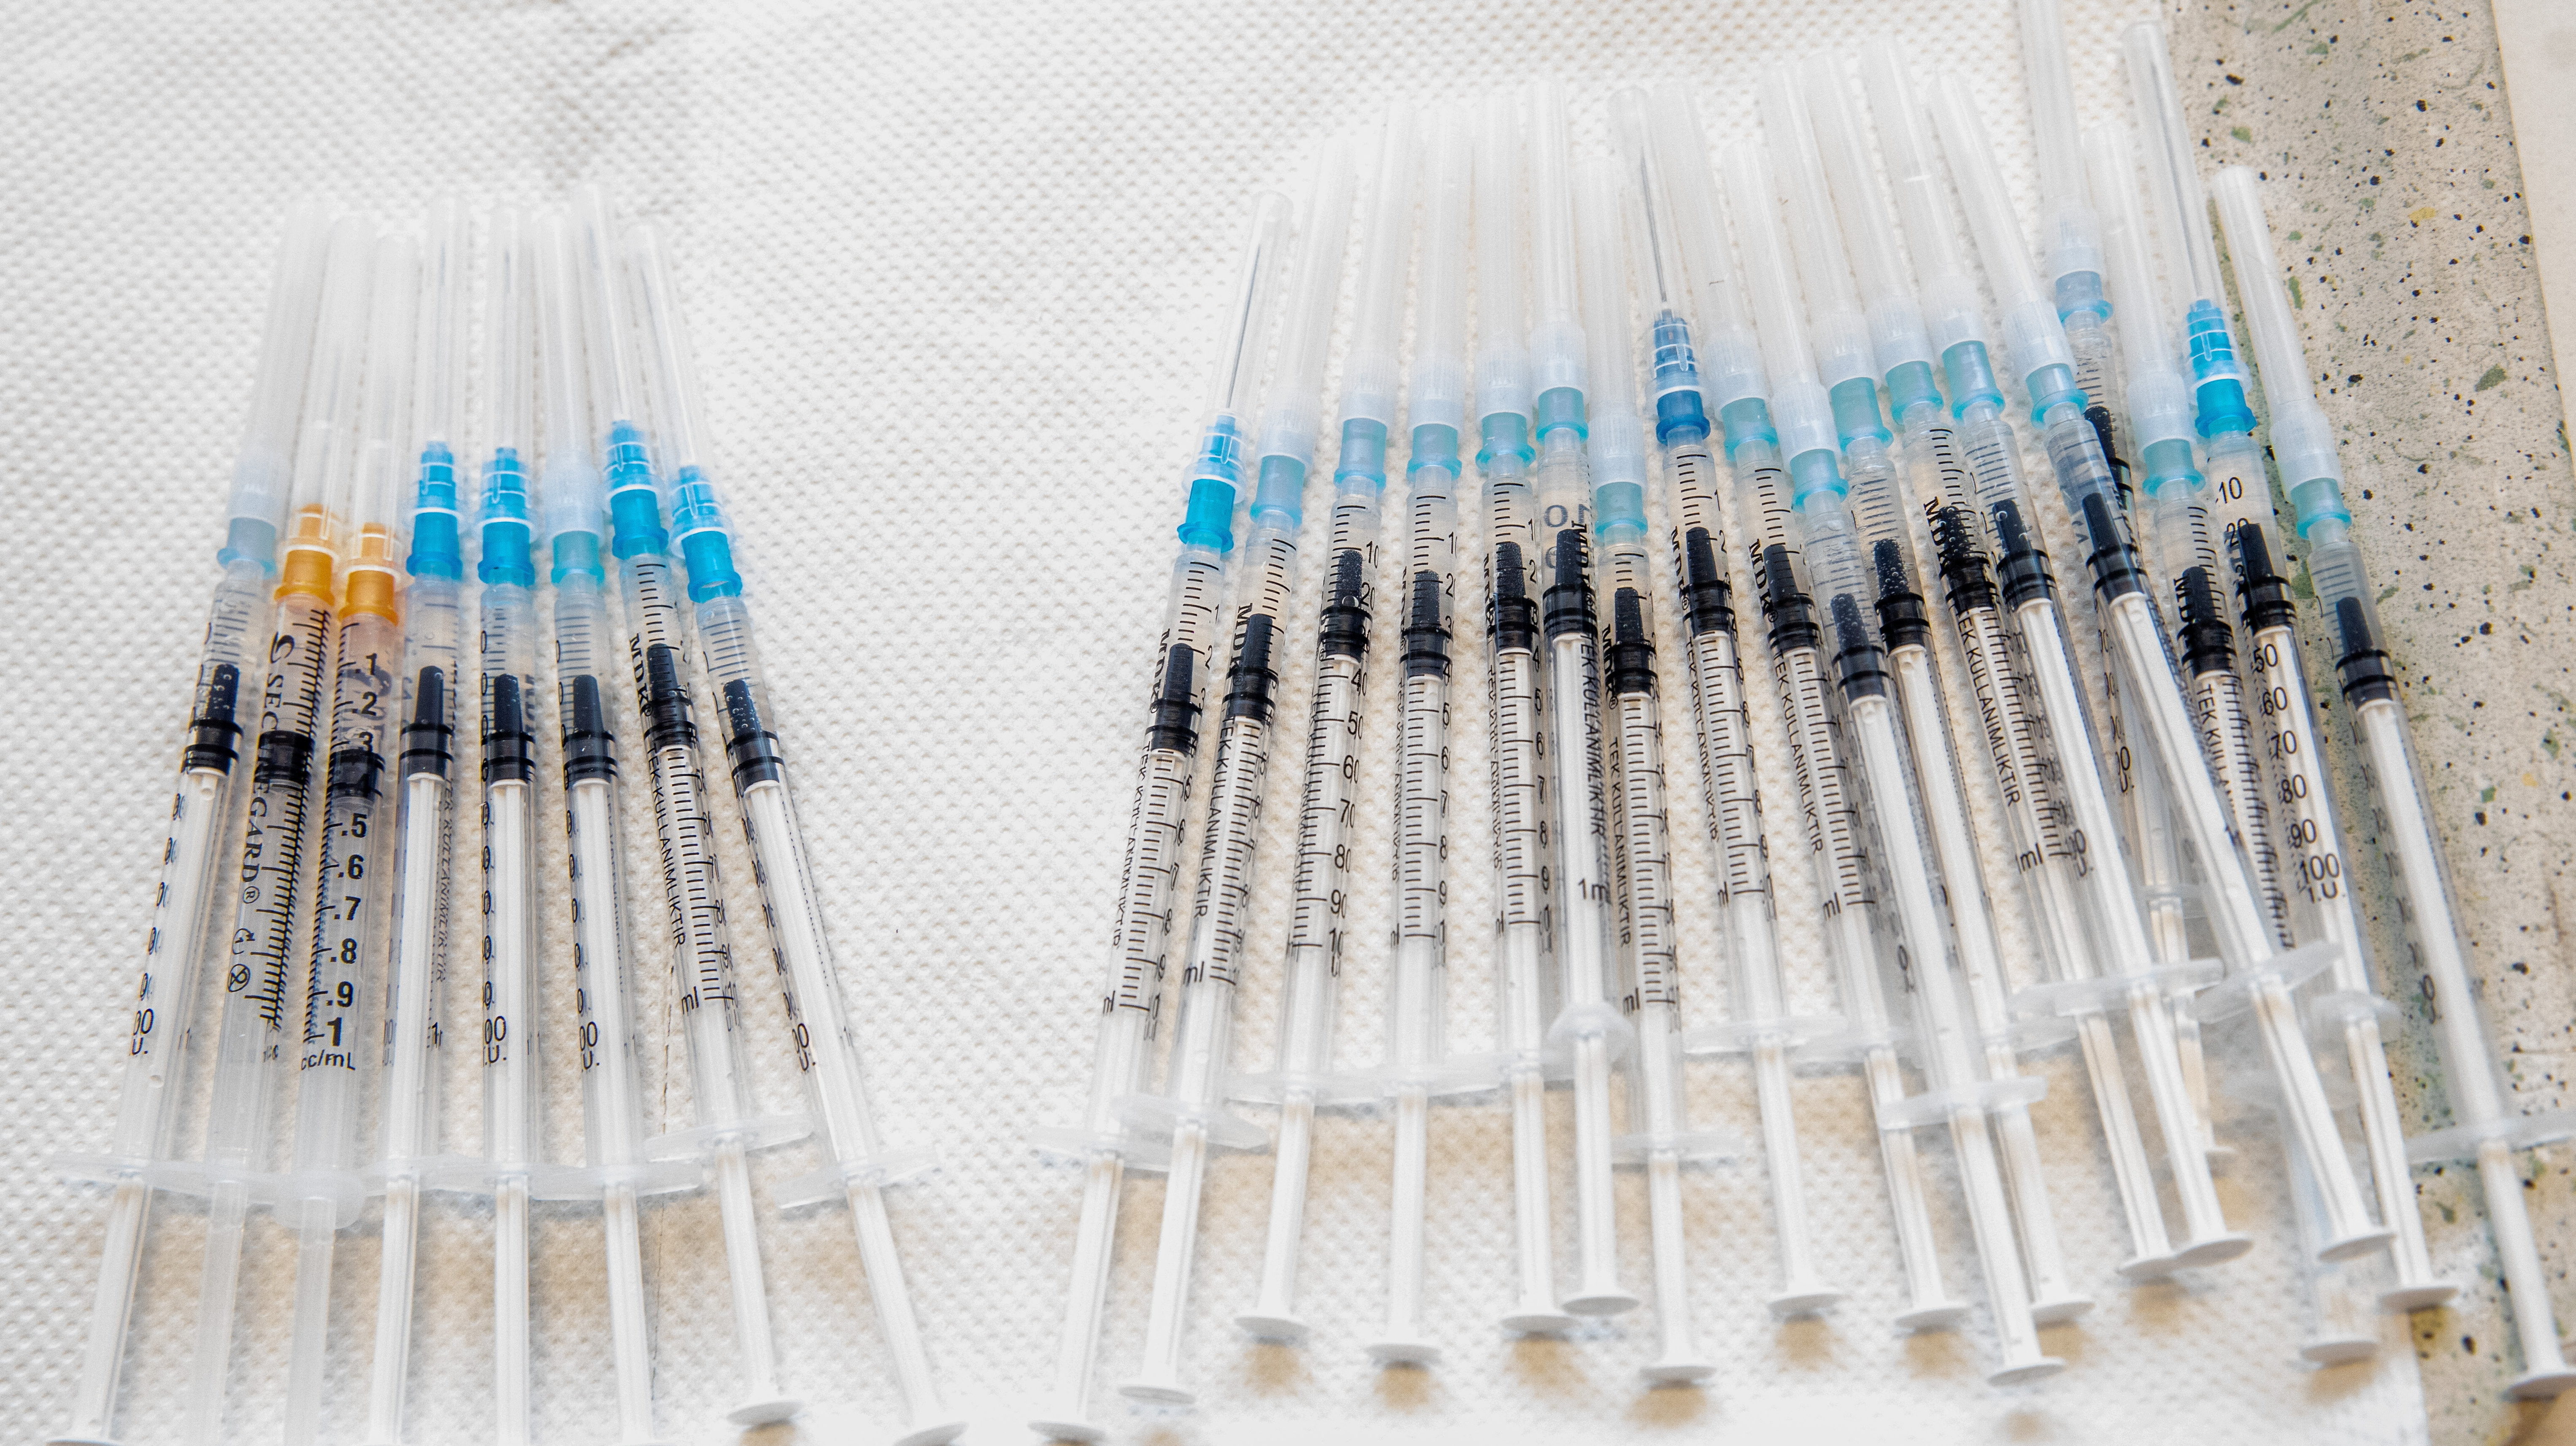 Mostantól a háziorvosok is olthatnak az egyadagos Janssen-vakcinával